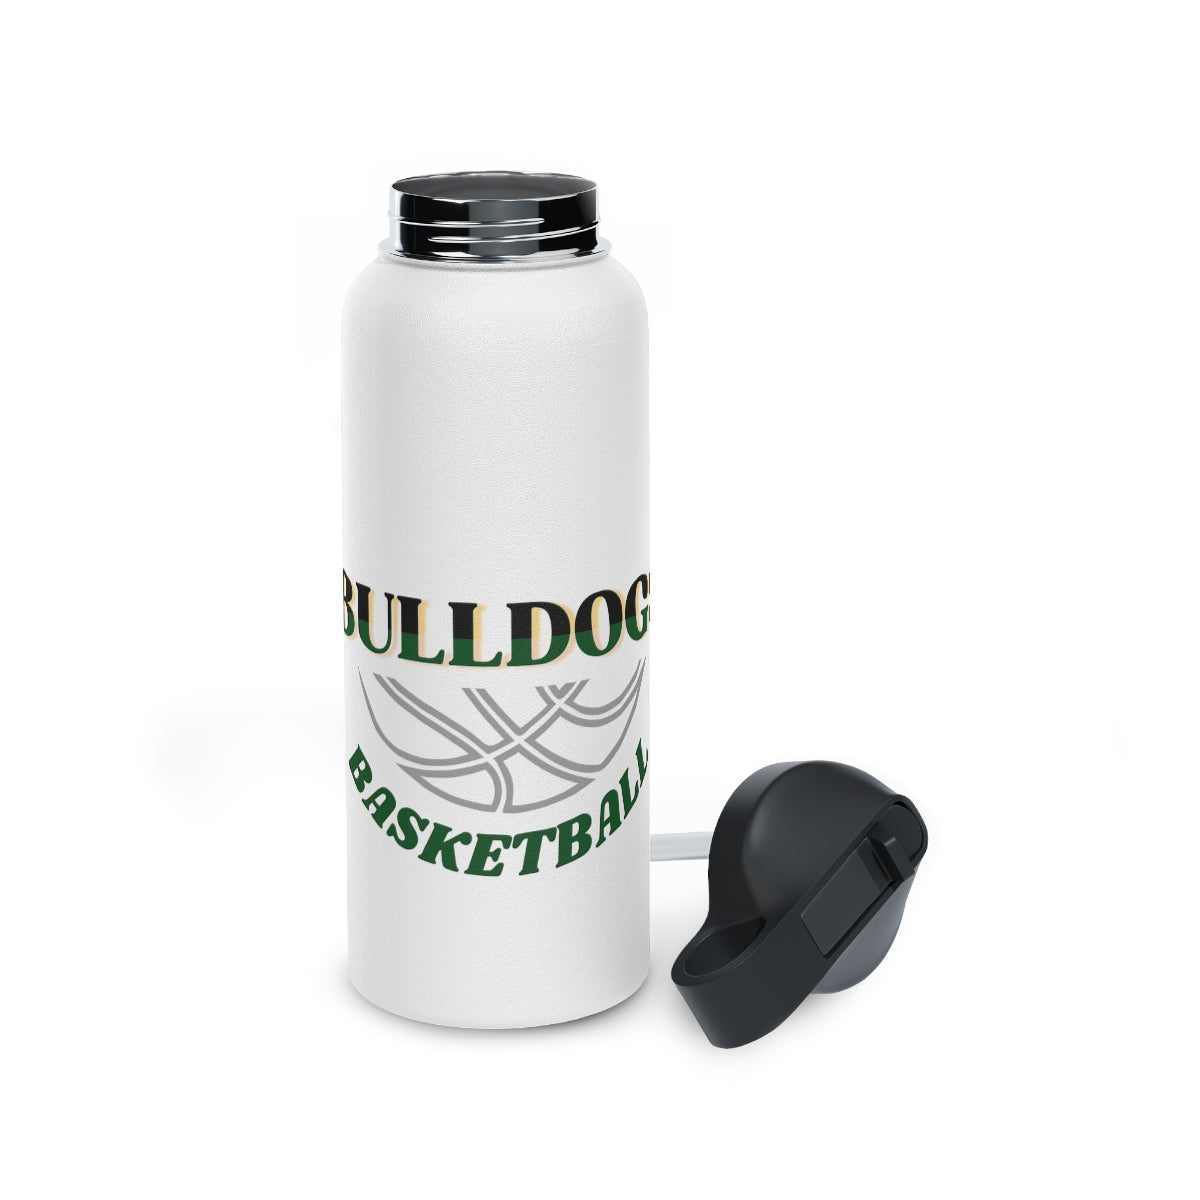 Bulldogs Stainless Steel Water Bottle, Standard Lid